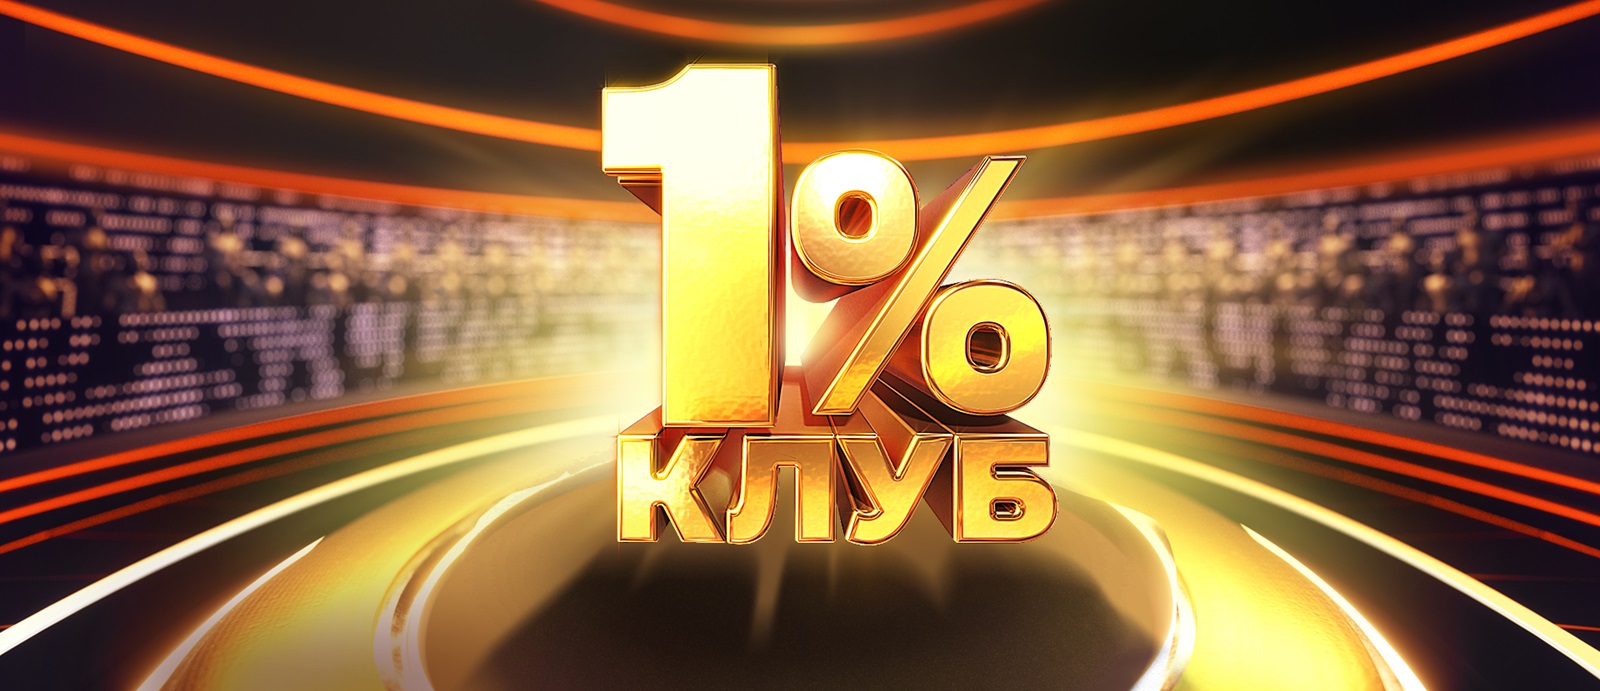 Клуб 1% - новий проєкт "1+1 Україна". Новини та подробиці проєкту Клуб 1%